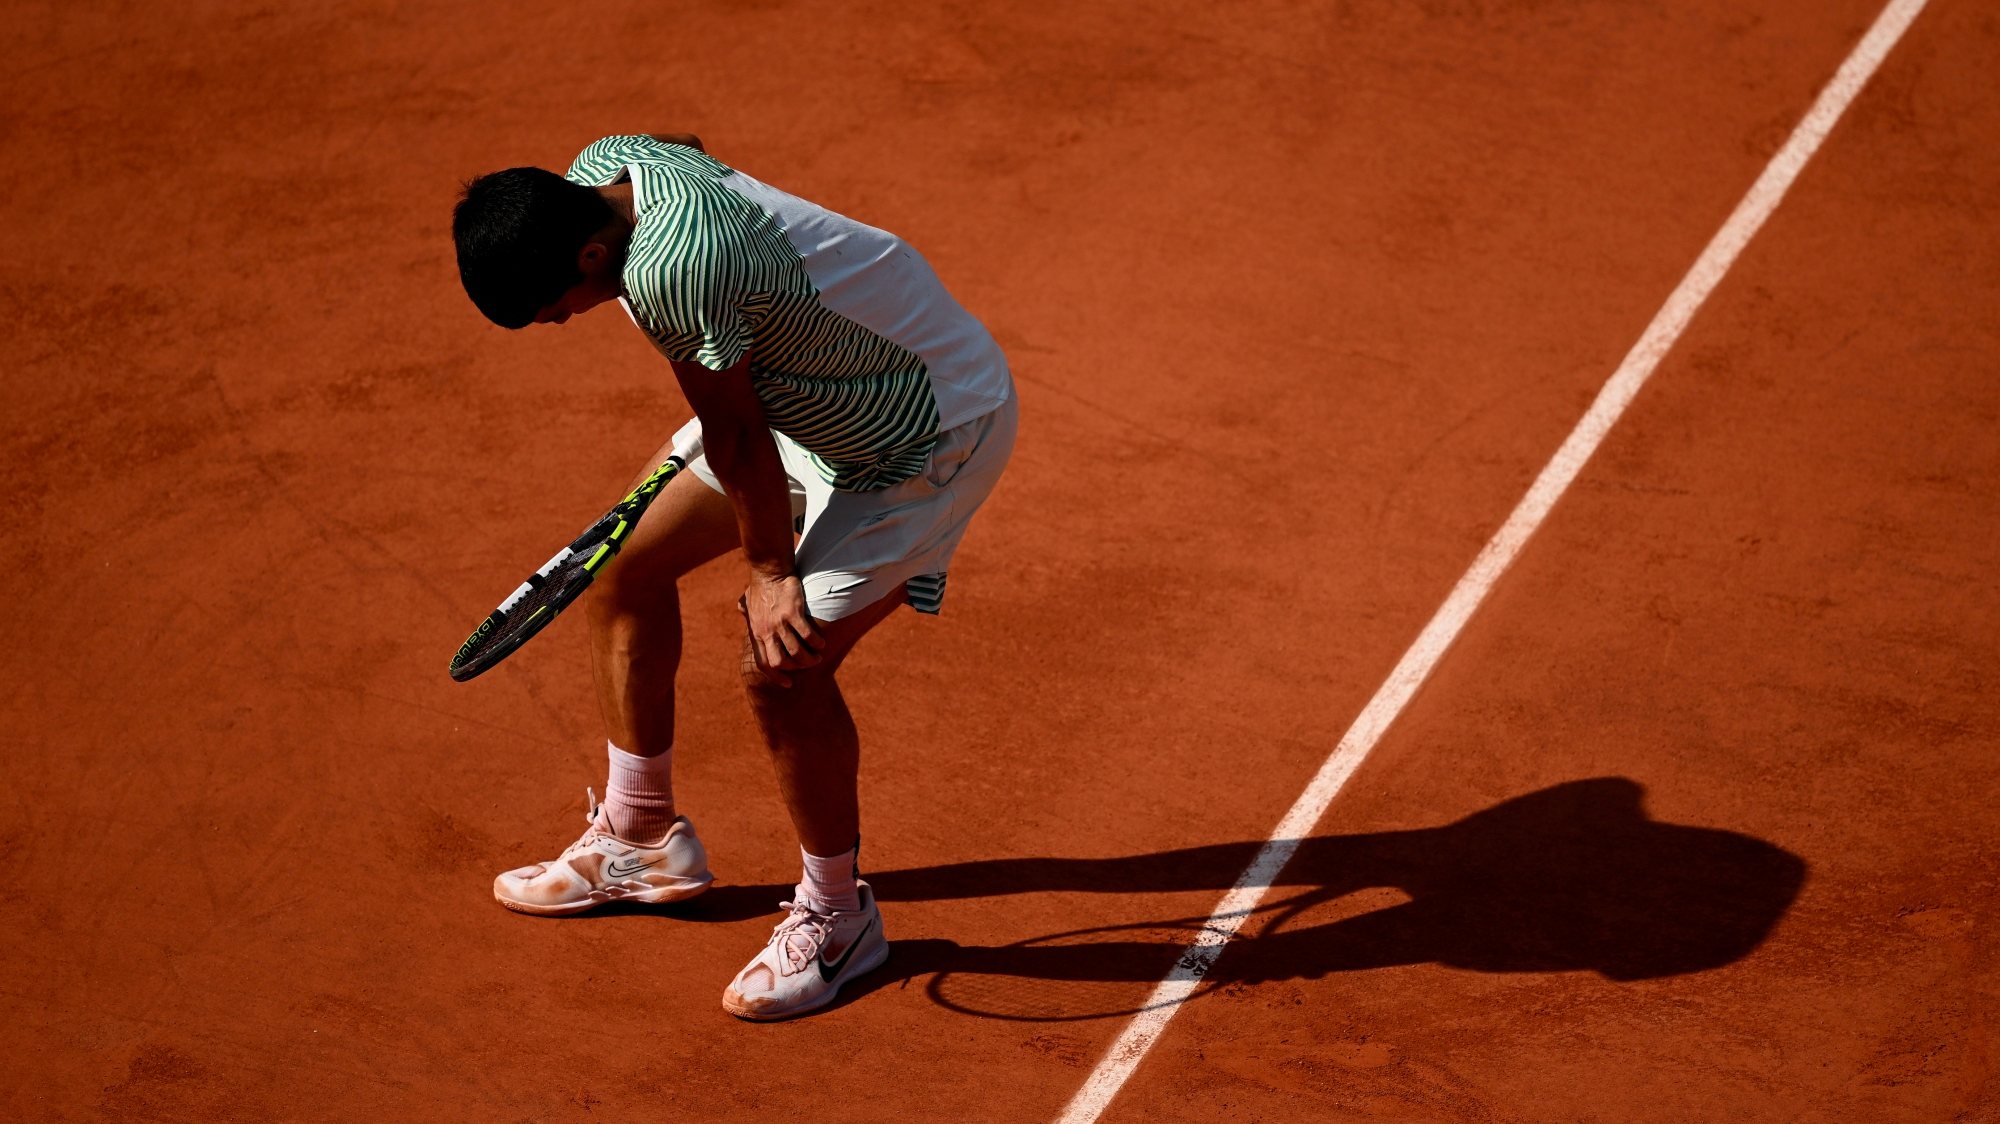 Fantástico  Tenista Novak Djokovic se torna o homem com mais